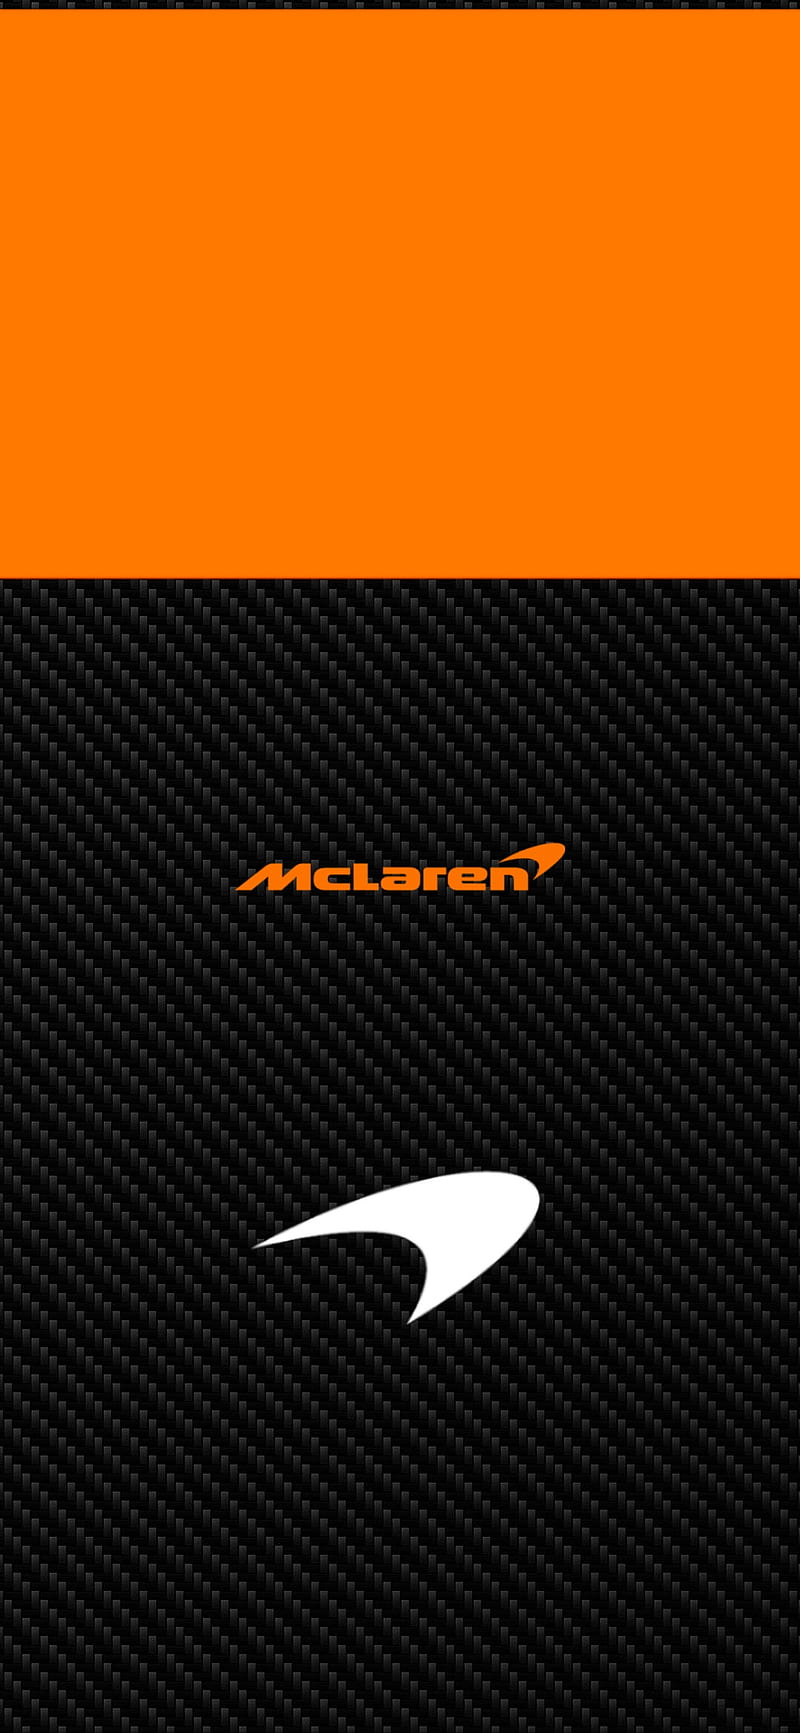 Best Mclaren logo iPhone HD Wallpapers - iLikeWallpaper